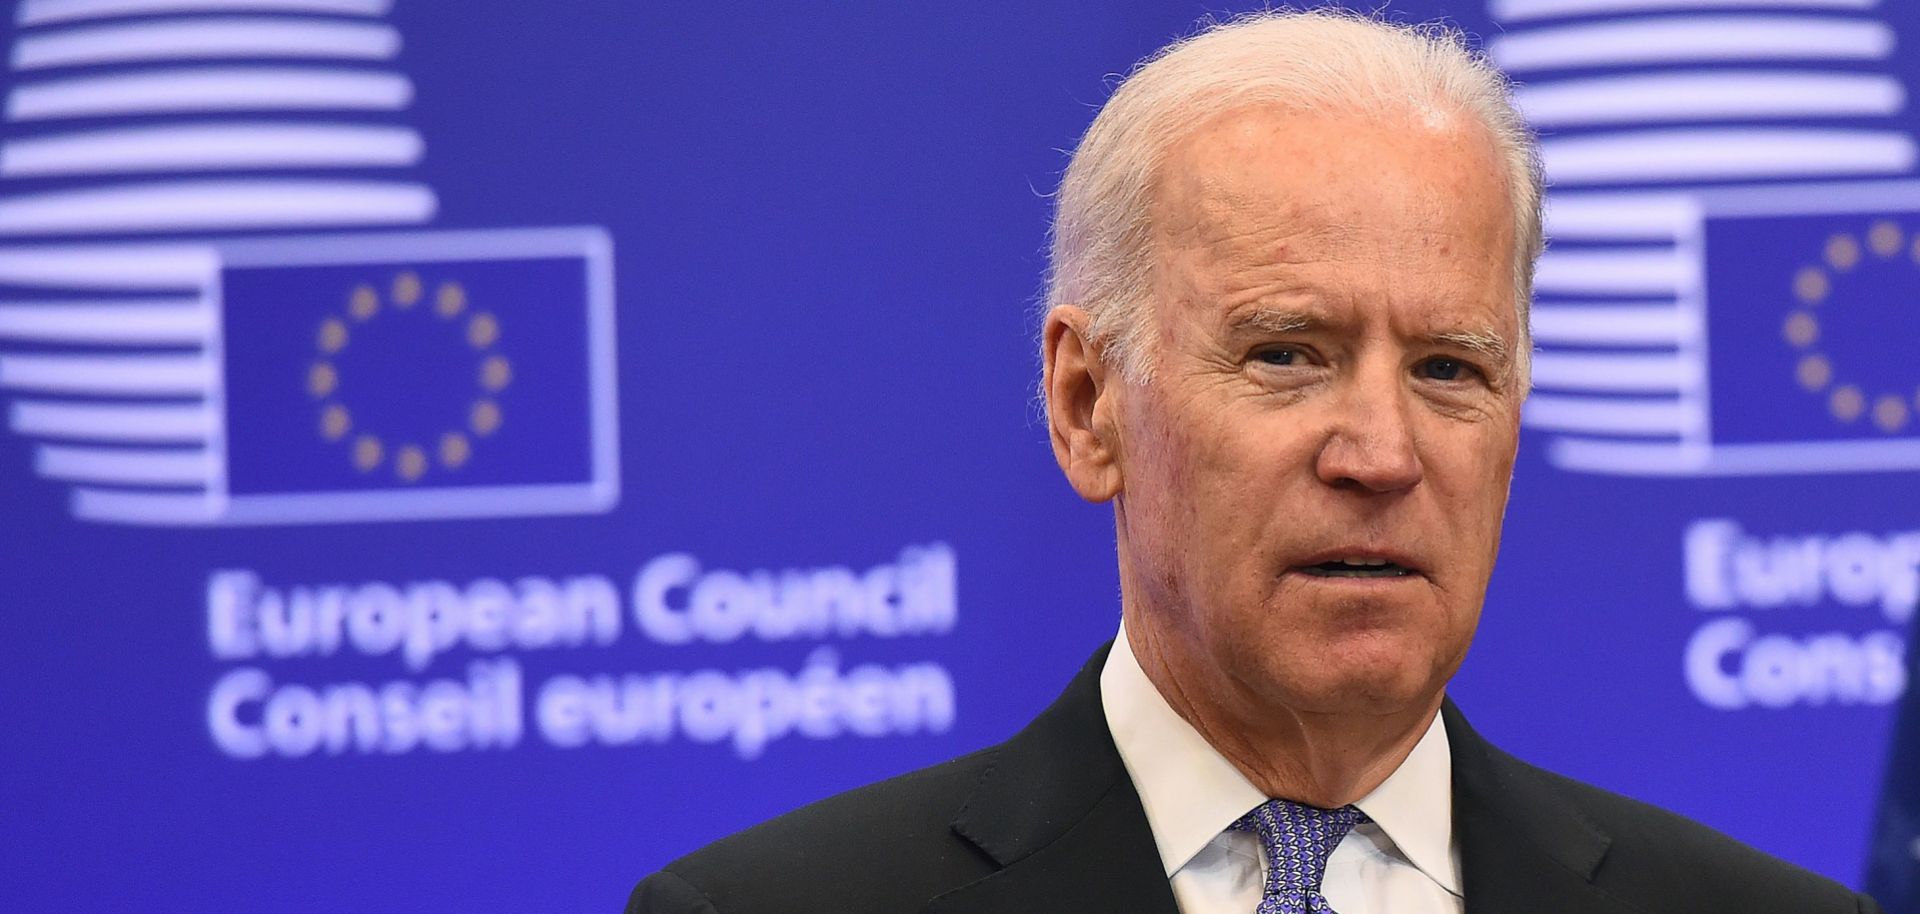 Then-U.S. Vice President Joe Biden speaks during a 2015 meeting with EU leaders in Brussels, Belgium.